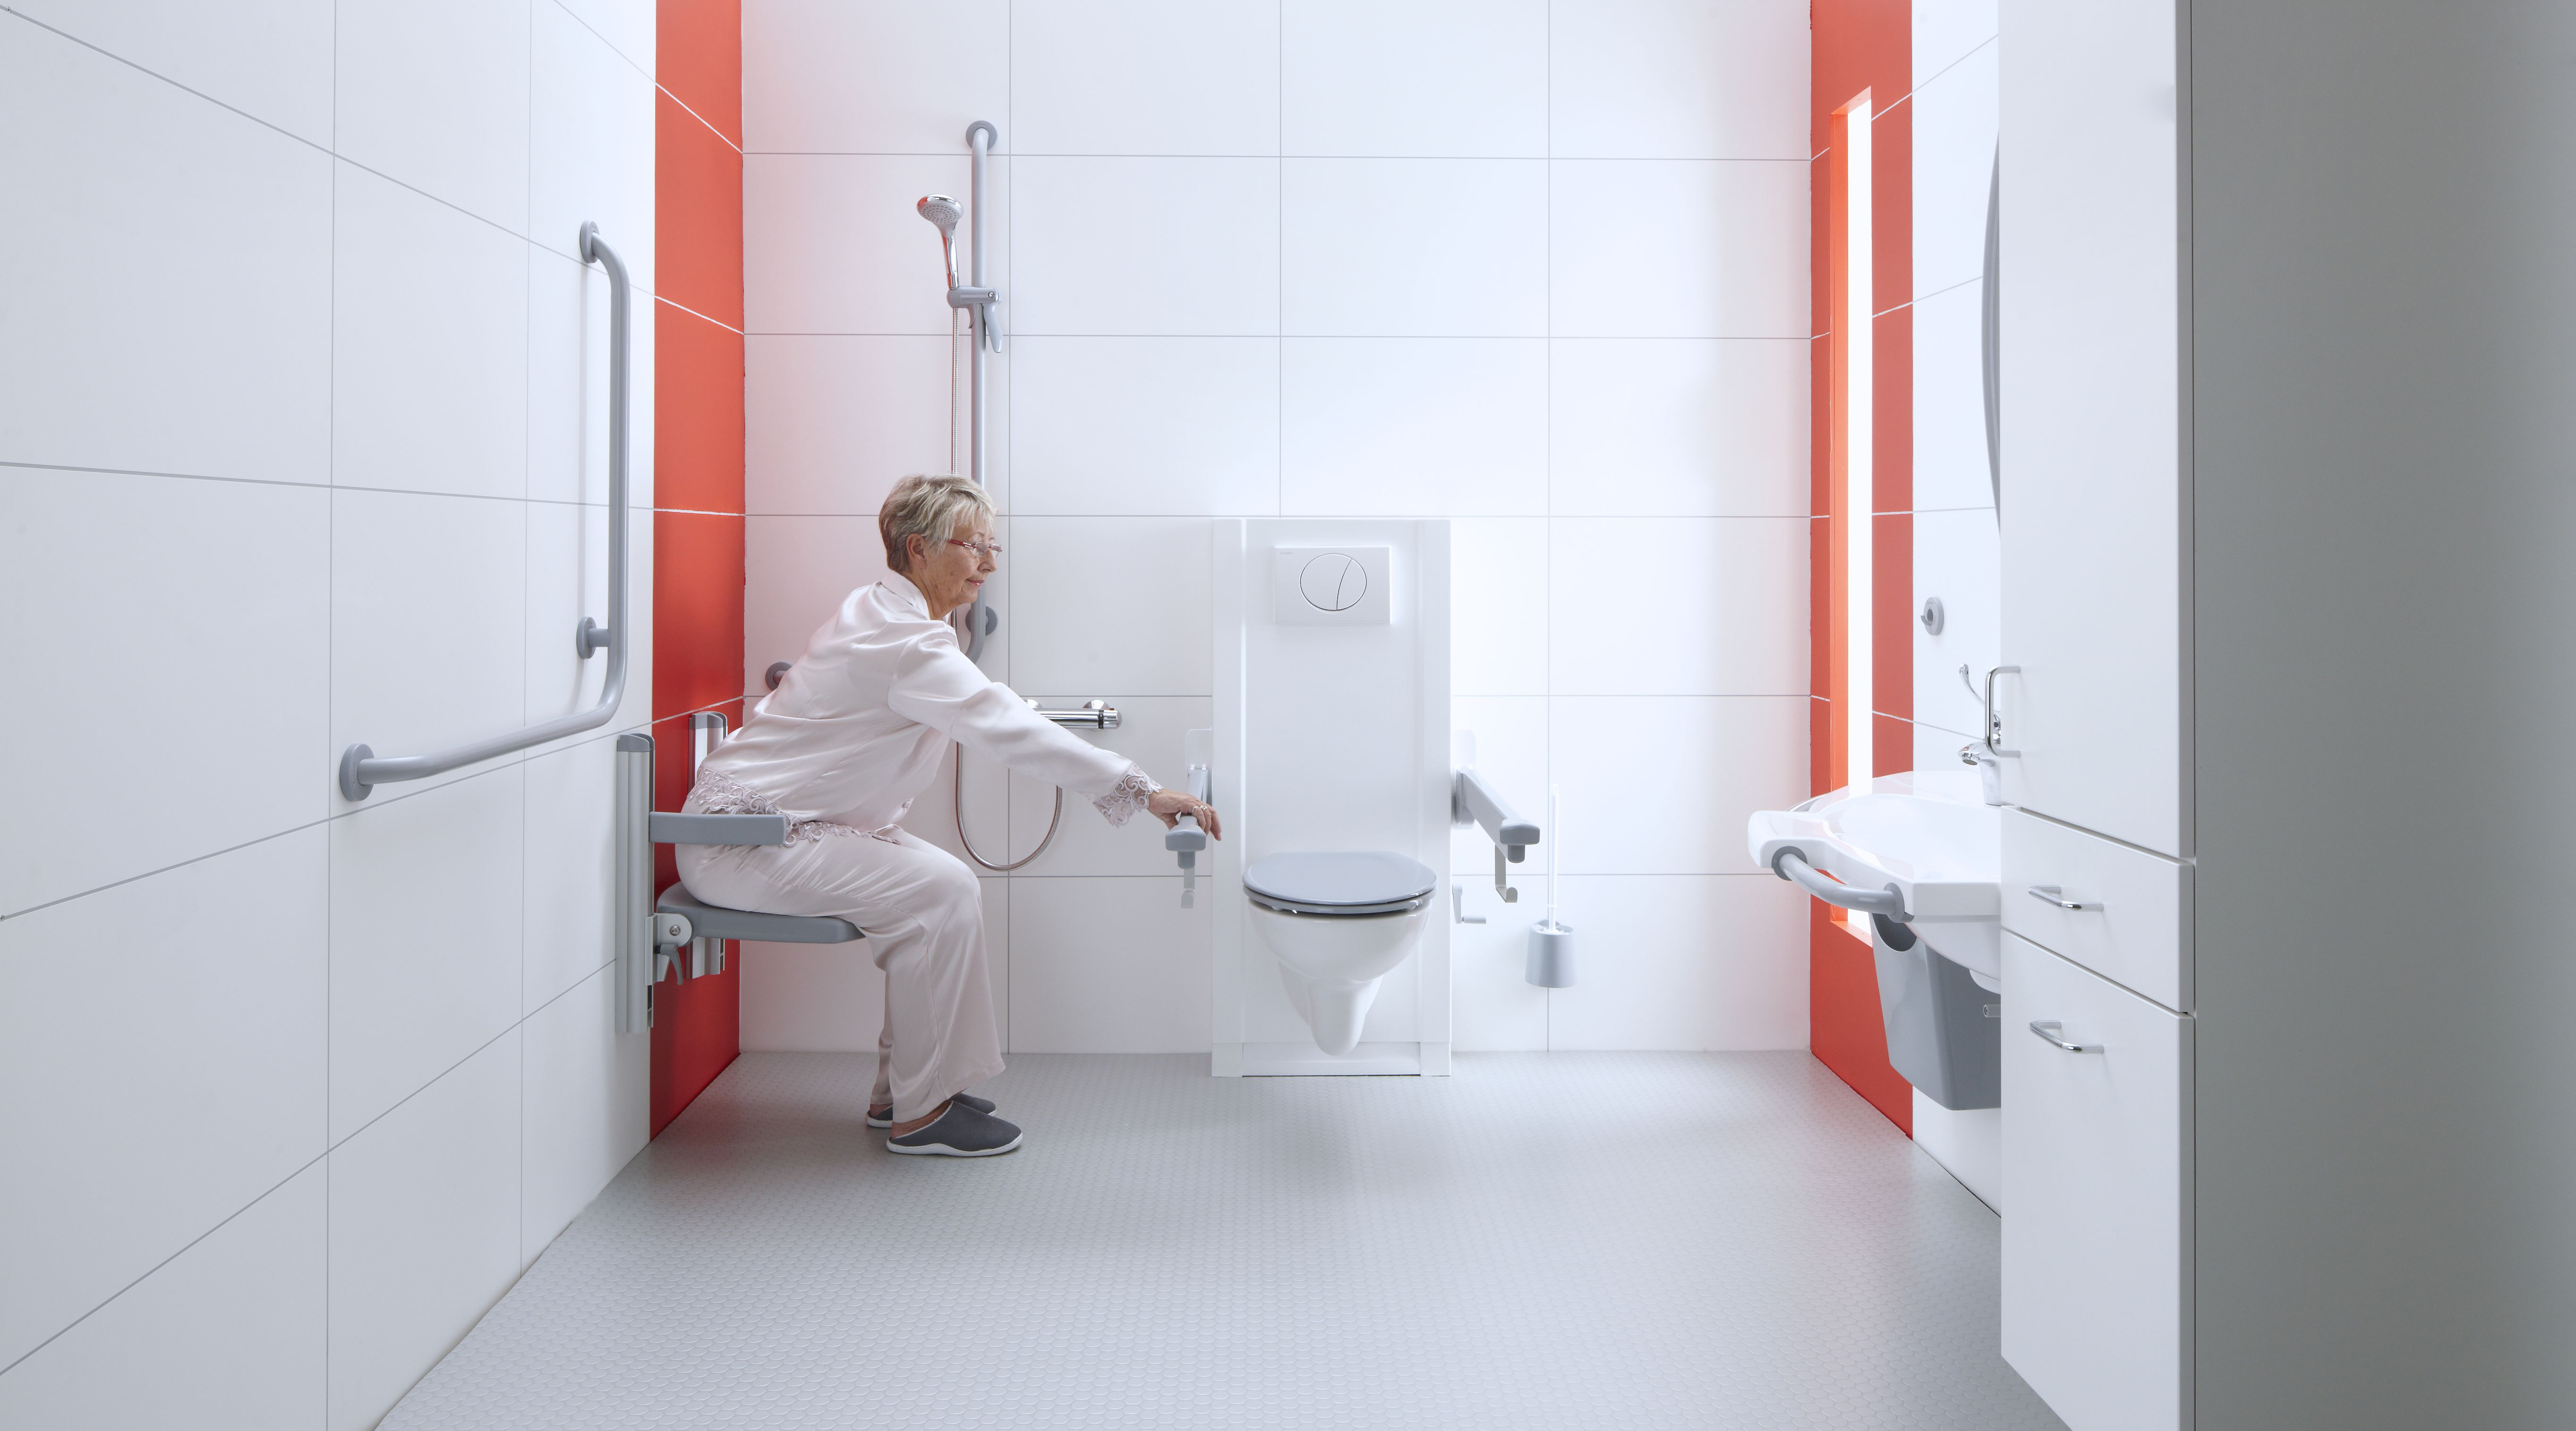 Genoeg ruimte in de badkamer - Badkamer hulpmiddelen - Bano Zorgbadkamers